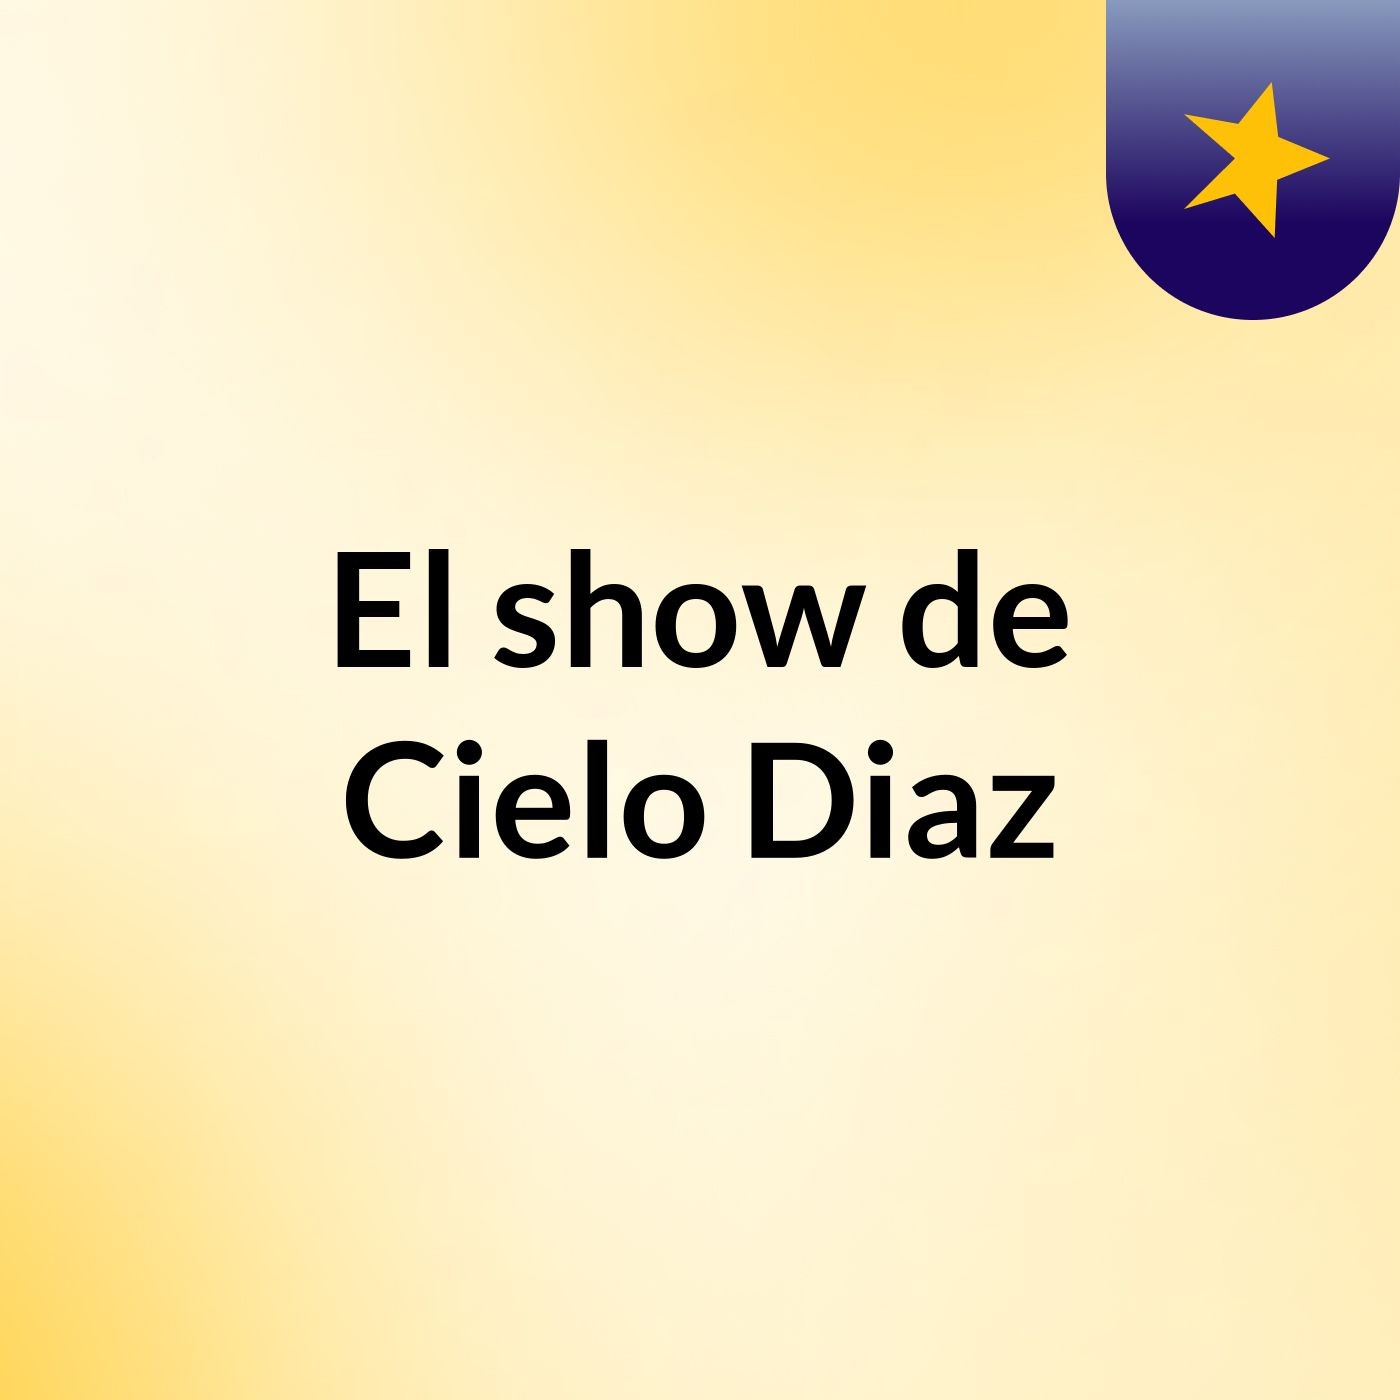 El show de Cielo Diaz